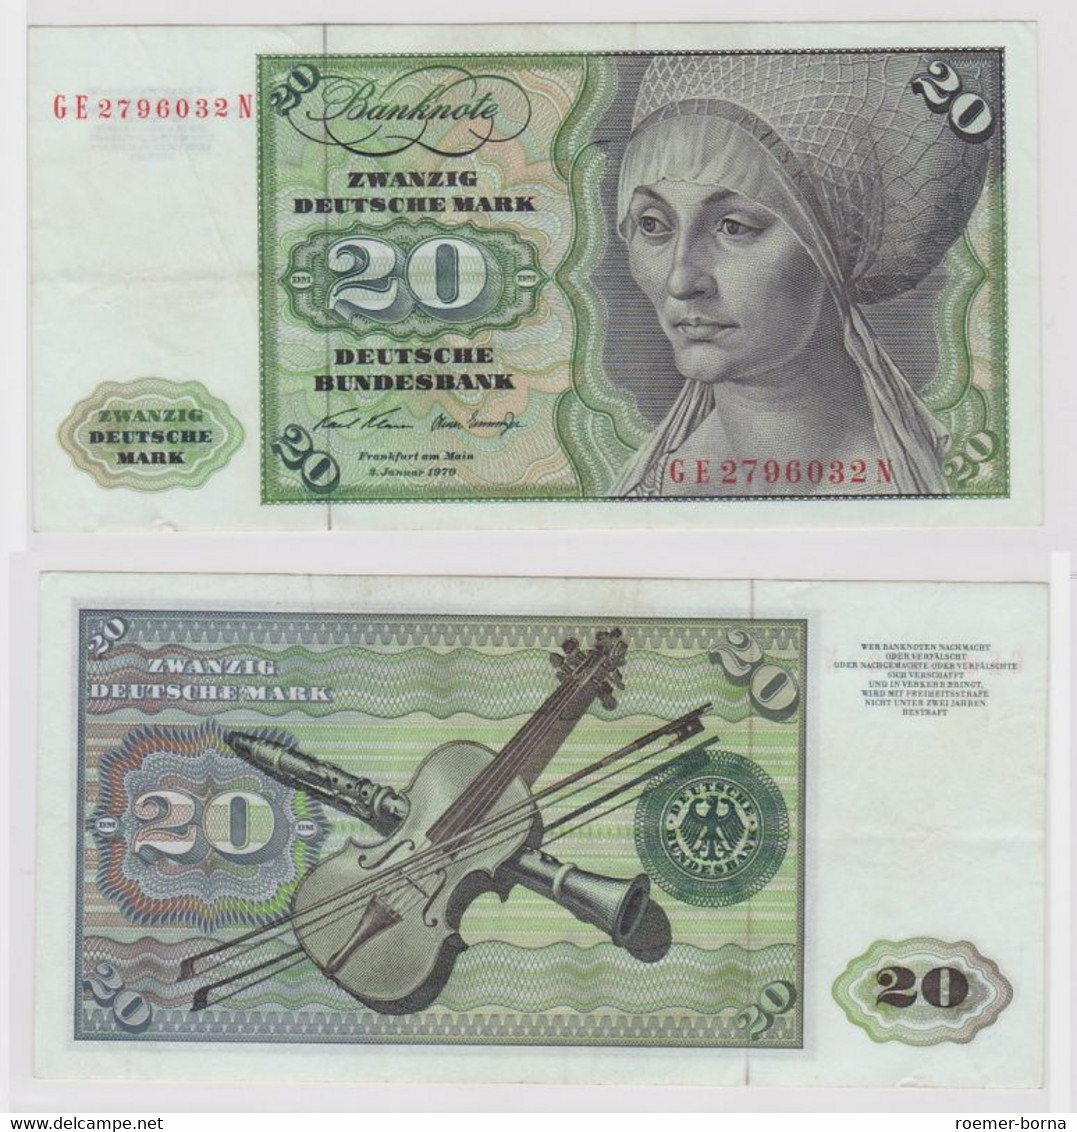 T148113 Banknote 20 DM Deutsche Mark Ro. 271b Schein 2.Jan. 1970 KN GE 2796032 N - 20 DM